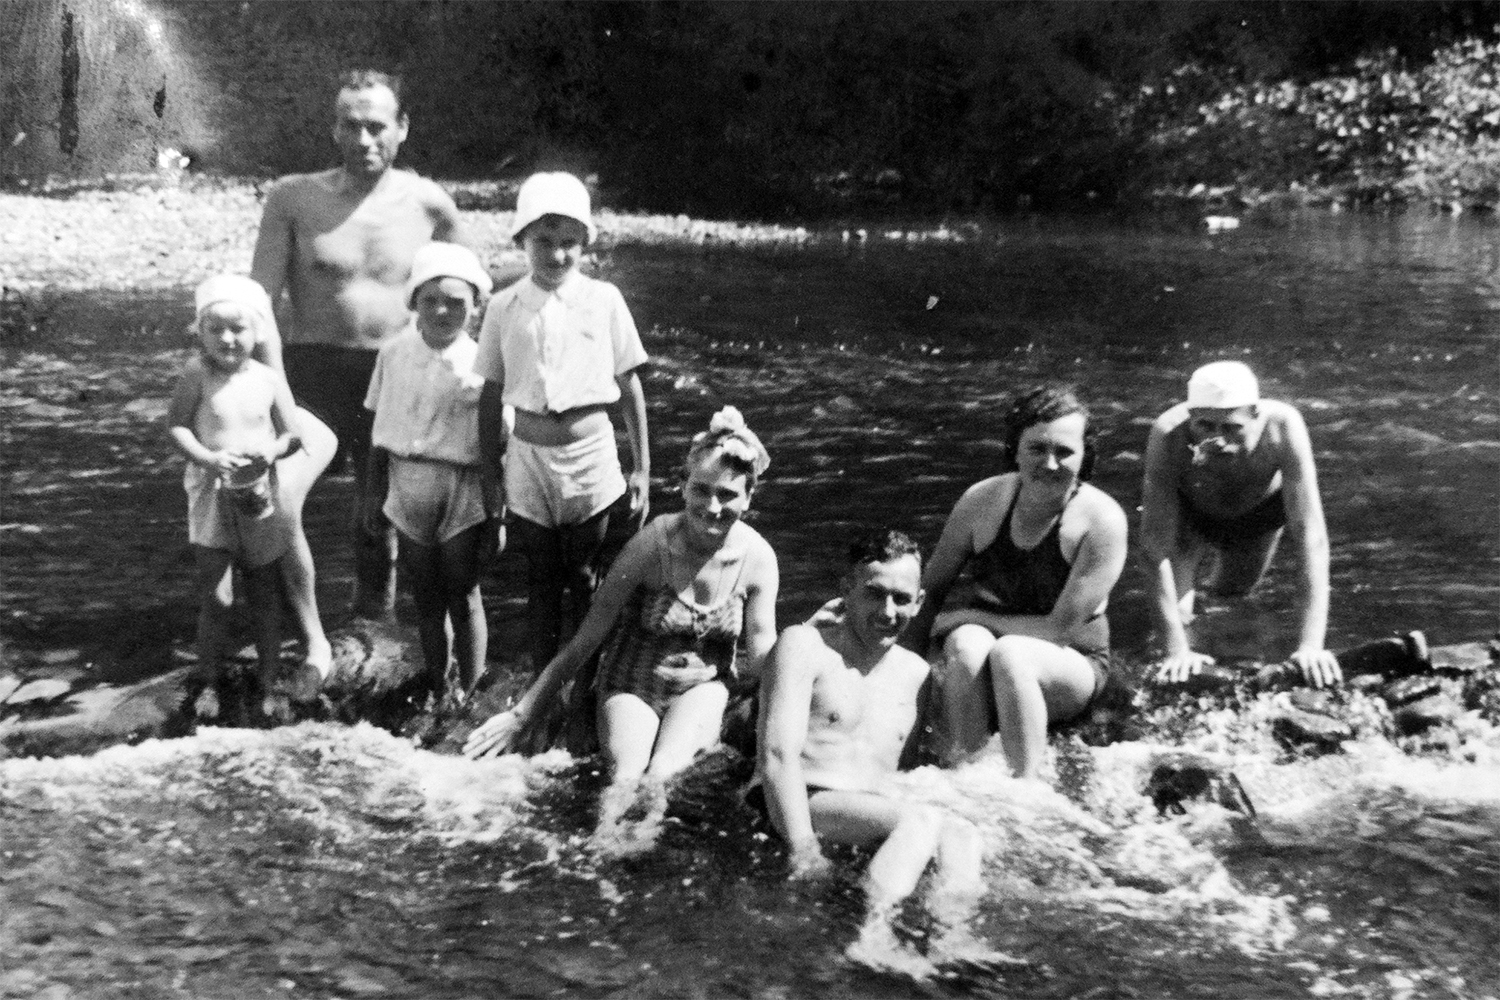 Ostatnie spokojne dni lata 1939 roku spedzane na kapielach w rzece Boberce. W srodku Ludwik Halewski.